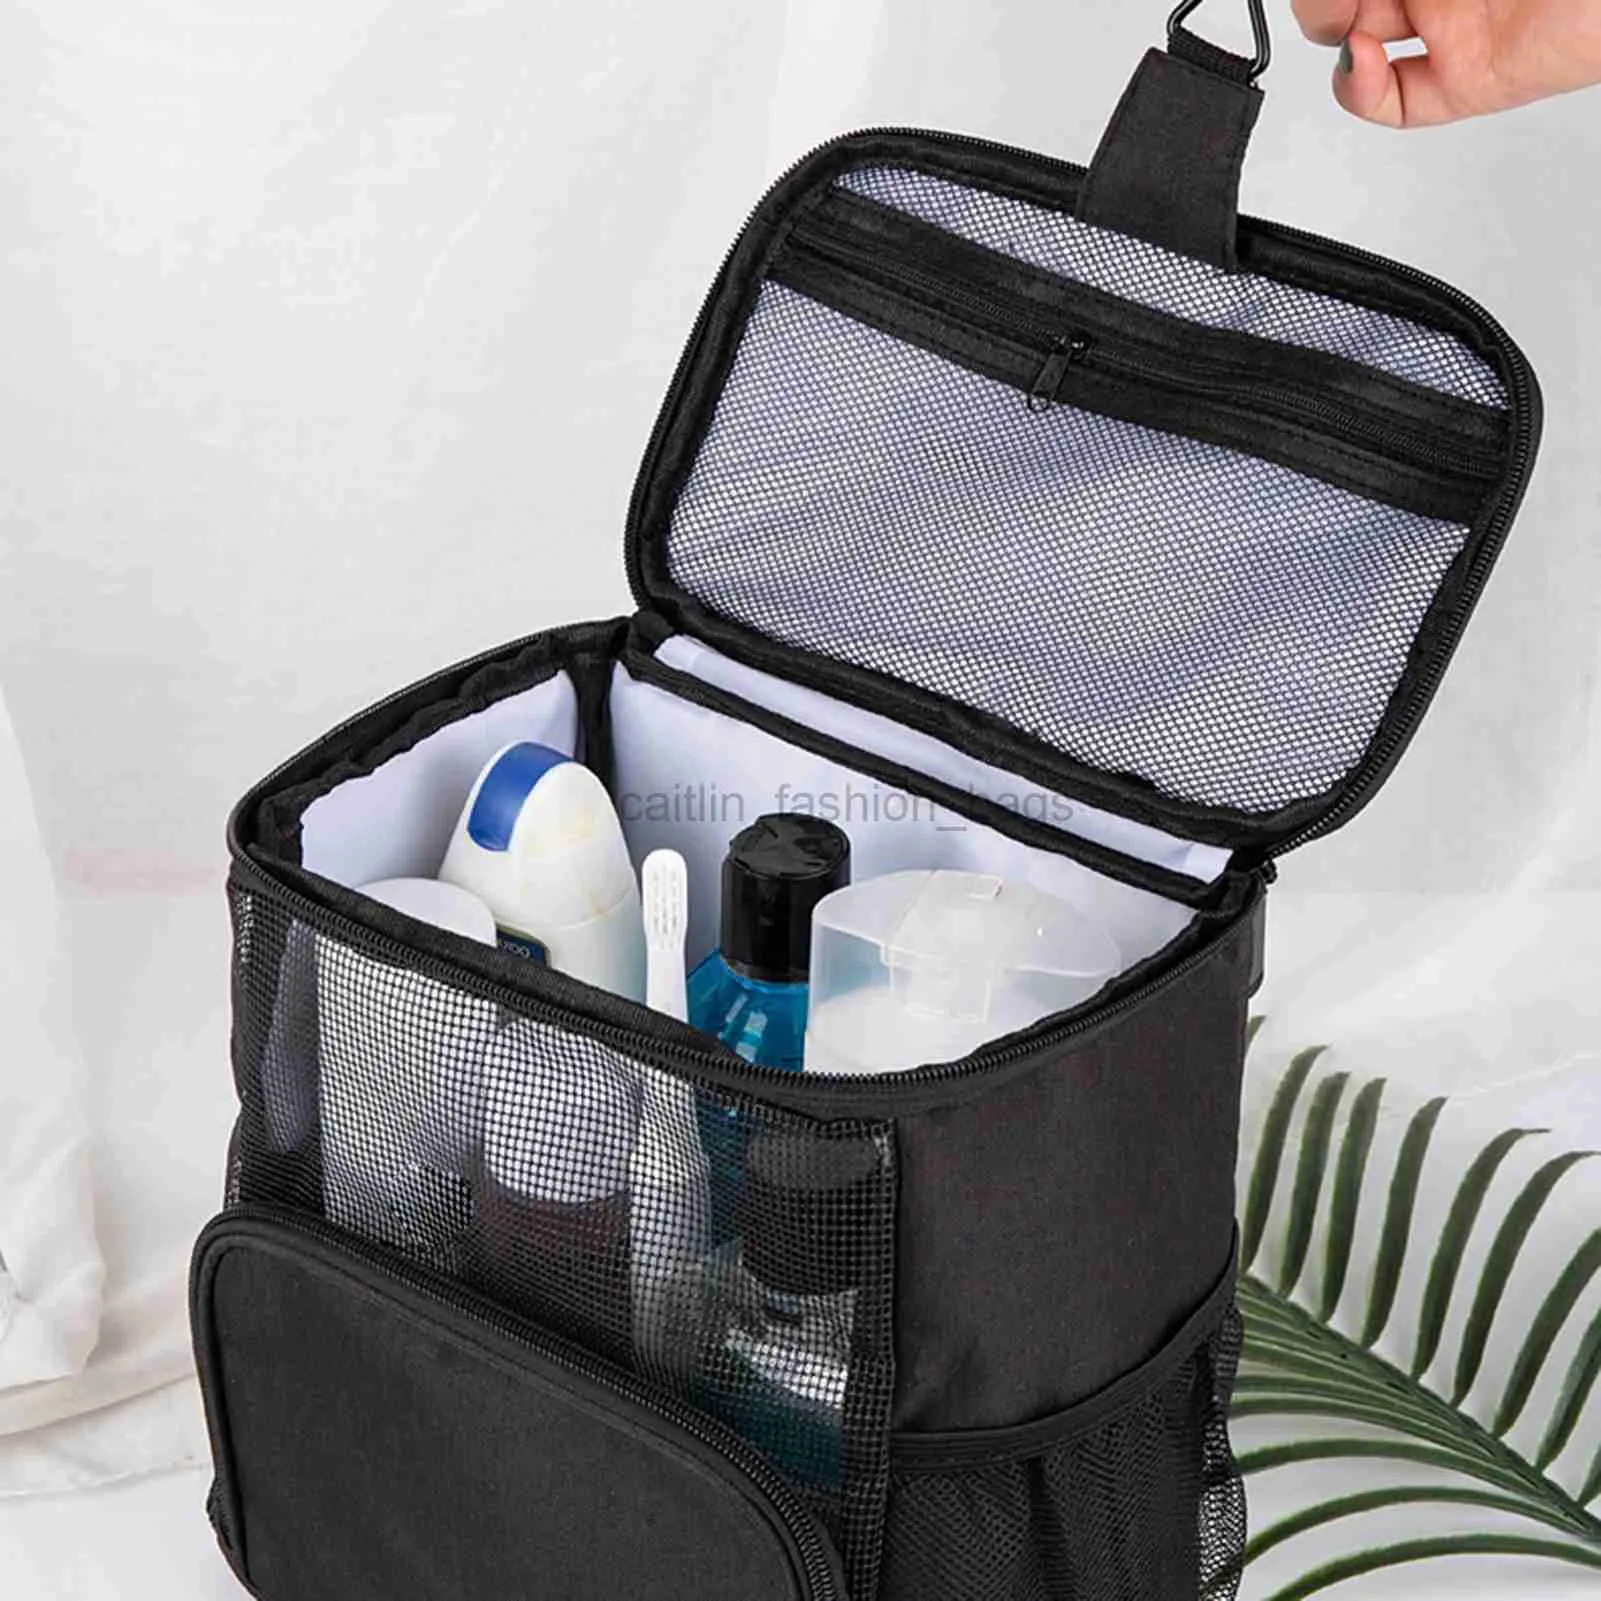 Totes Handheld Travel Cosmetics Storage Makeup Bag Portable Multi Company używane do organizacji i codziennie użyj Nin668 Caitlin_fashion_ Bags